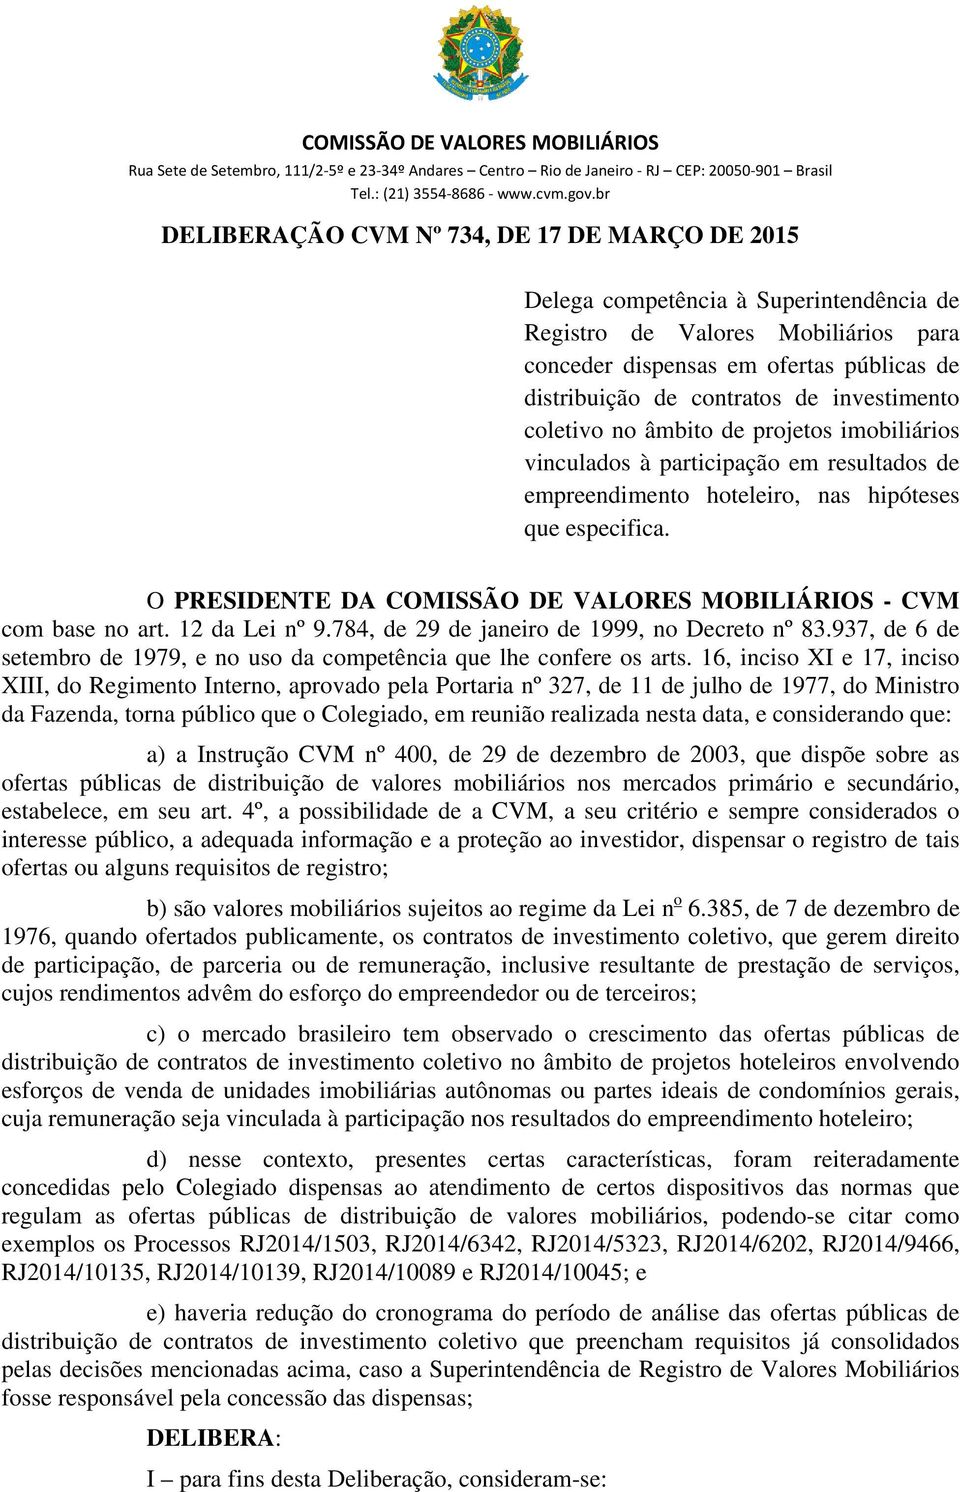 O PRESIDENTE DA COMISSÃO DE VALORES MOBILIÁRIOS - CVM com base no art. 12 da Lei nº 9.784, de 29 de janeiro de 1999, no Decreto nº 83.